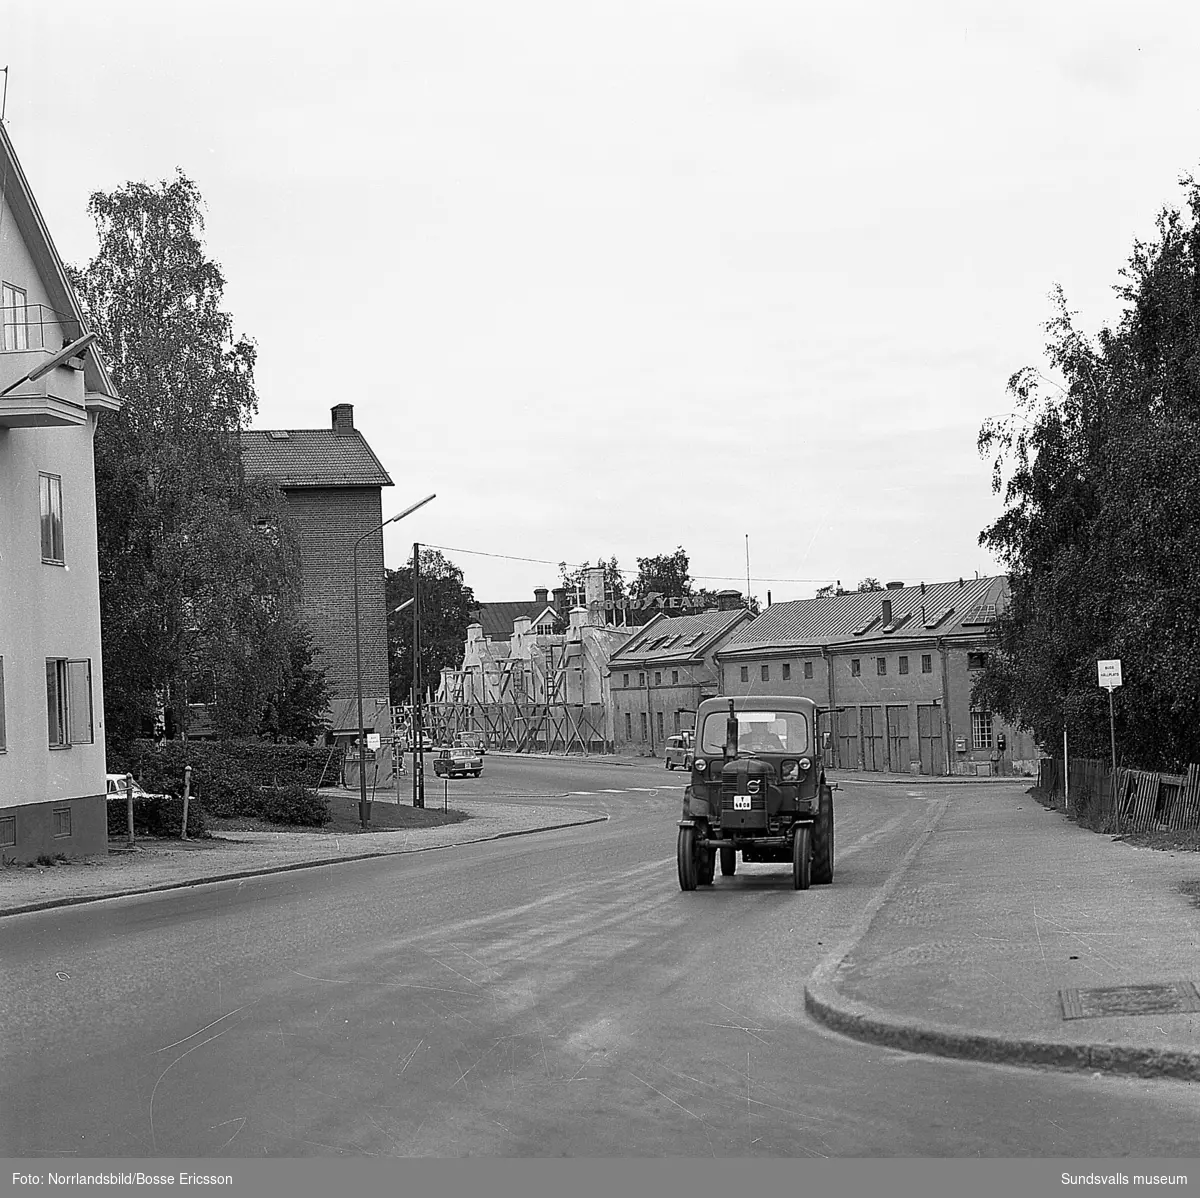 Vy från Fridhemsgatan mot Bilbolagets bilhallar mot Bergsgatan. Här syns även de gamla numera rivna byggnaderna närmast korsningen med Parkgatan. Tomten är fortfarande obebyggd (2016).